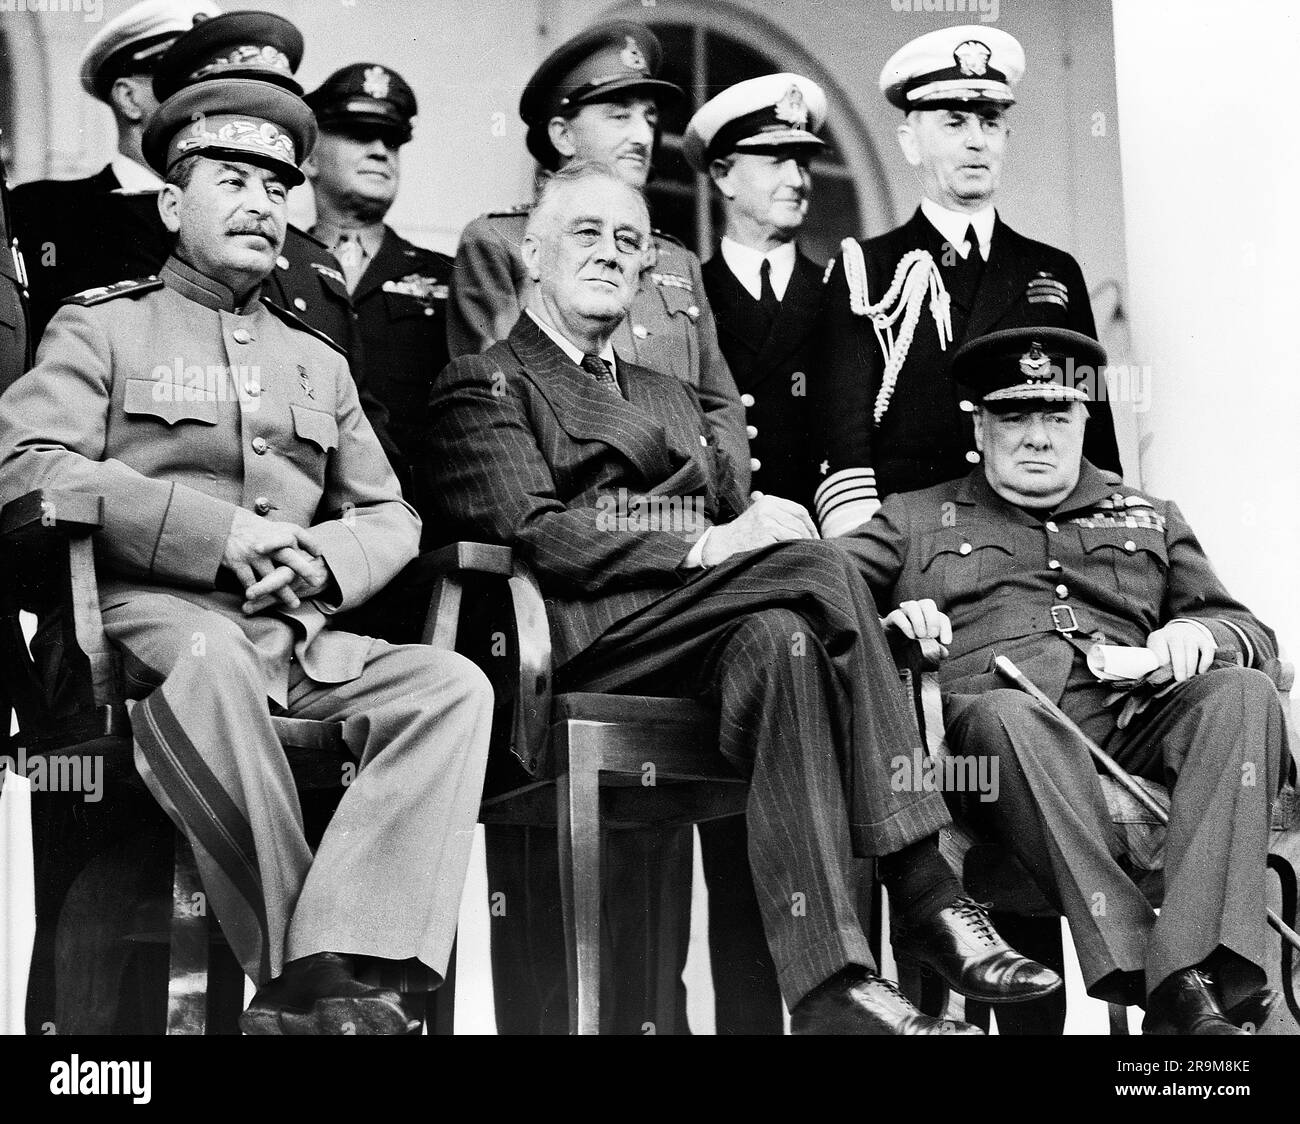 Segretario generale sovietico Josef Stalin, Stati Uniti Il presidente Franklin Roosevelt, il primo ministro britannico Winston Churchill, sul portico dell'ambasciata russa durante la conferenza di Teheran, Teheran, Iran, Stati Uniti Army Signal Corps, dicembre 1943 Foto Stock